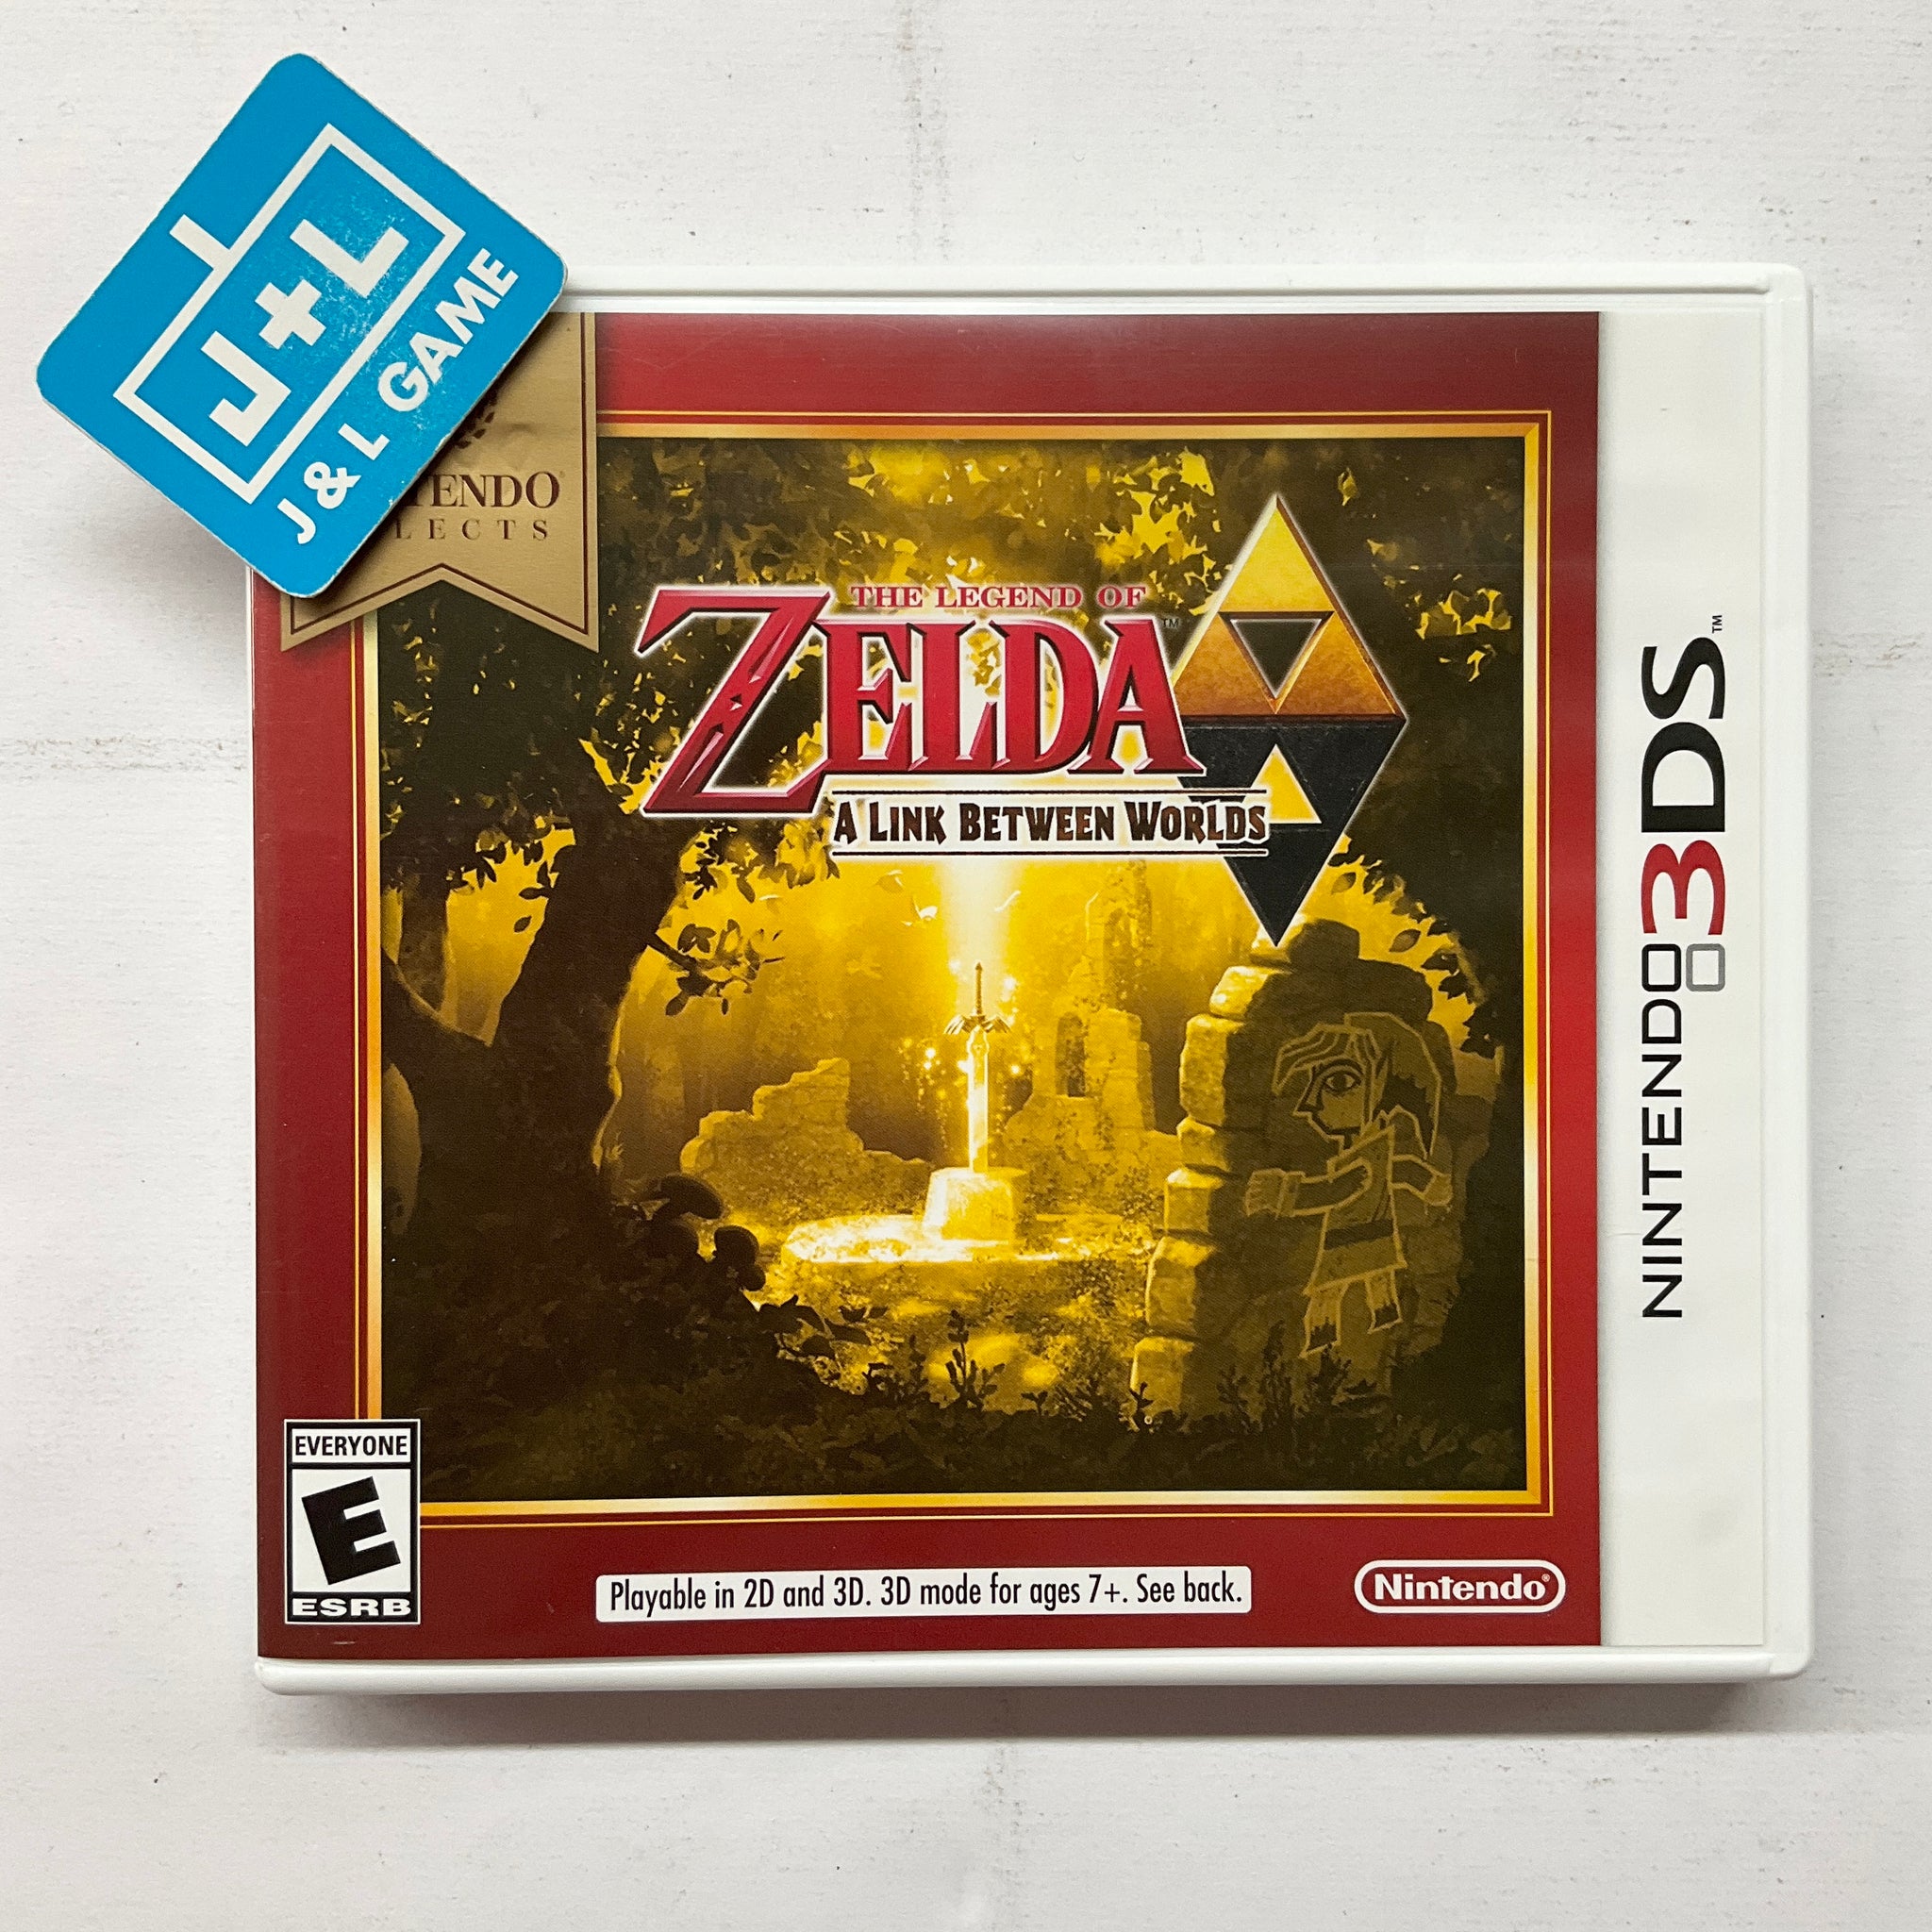  Nintendo Selects - Legend of Zelda: A Link Between